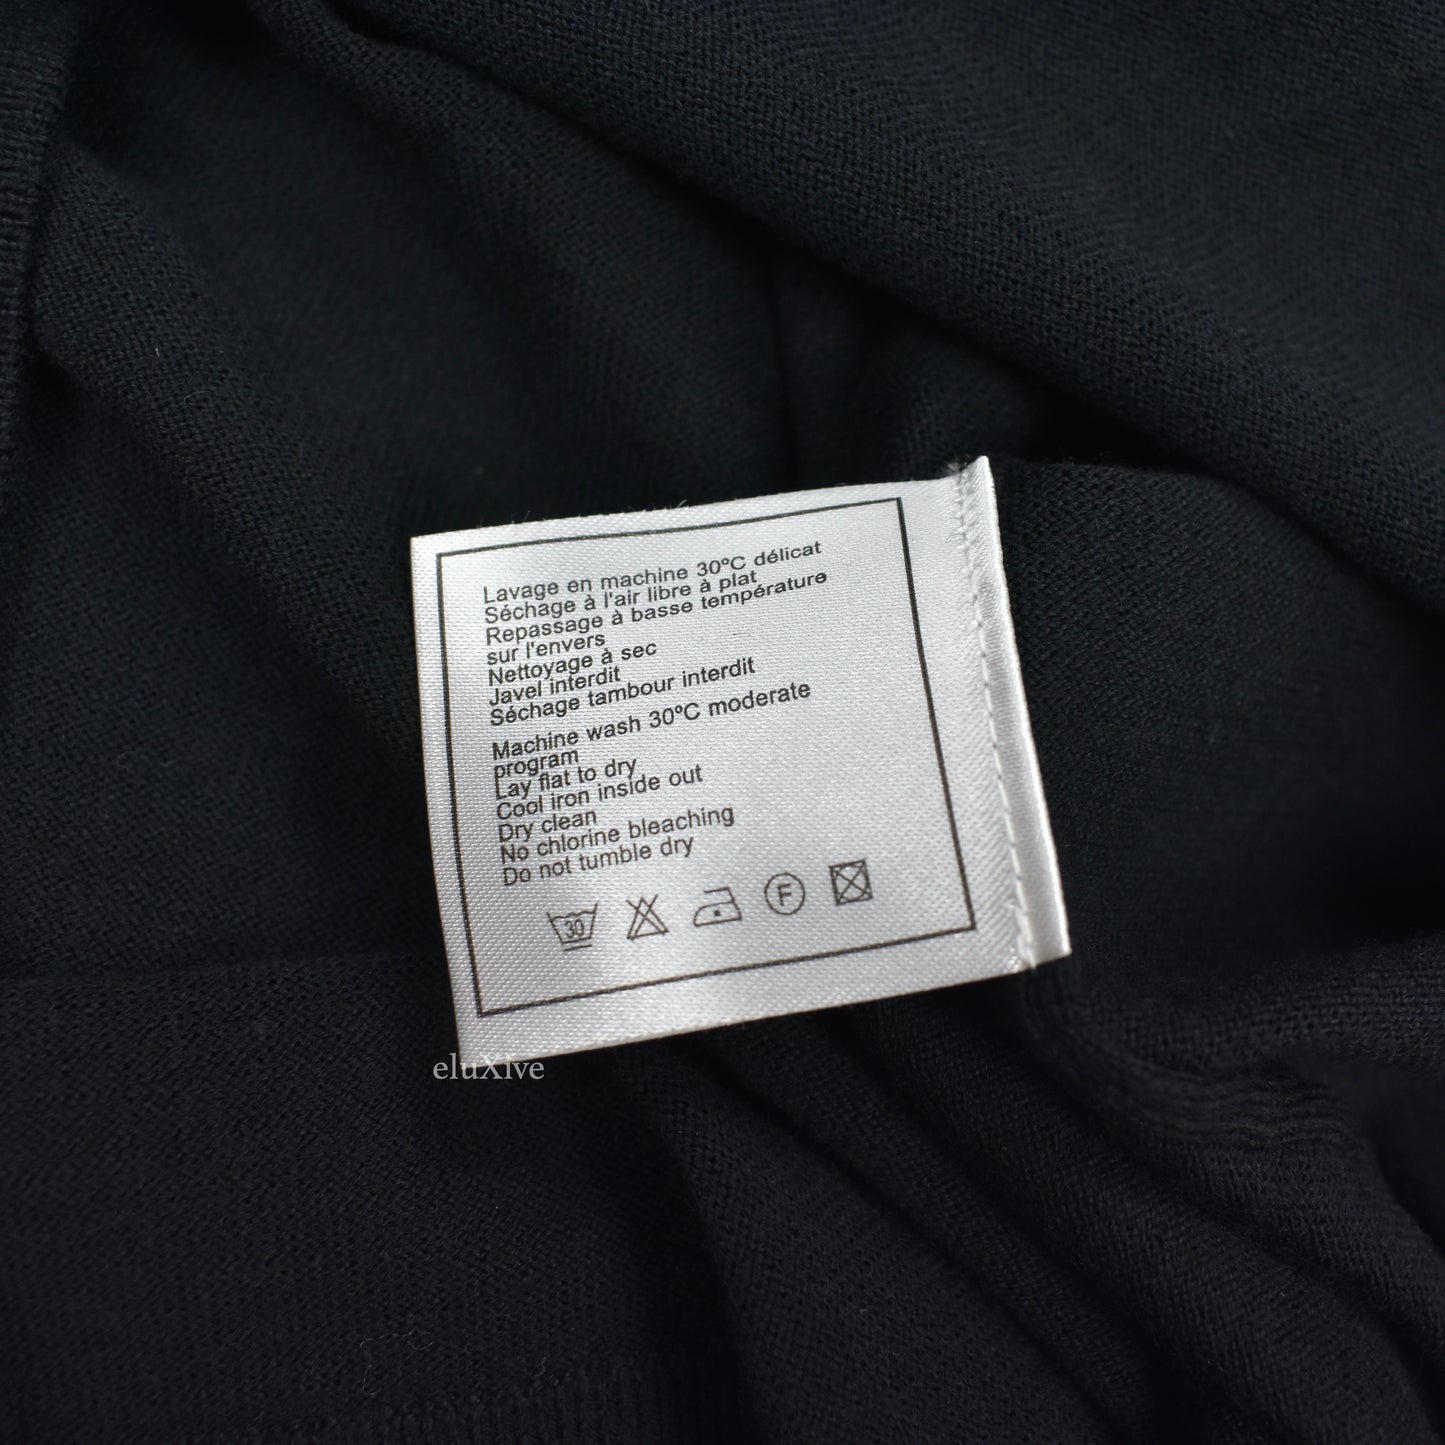 Chanel - Black Wool/Cotton CC Shoulder Button Uniform Sweater